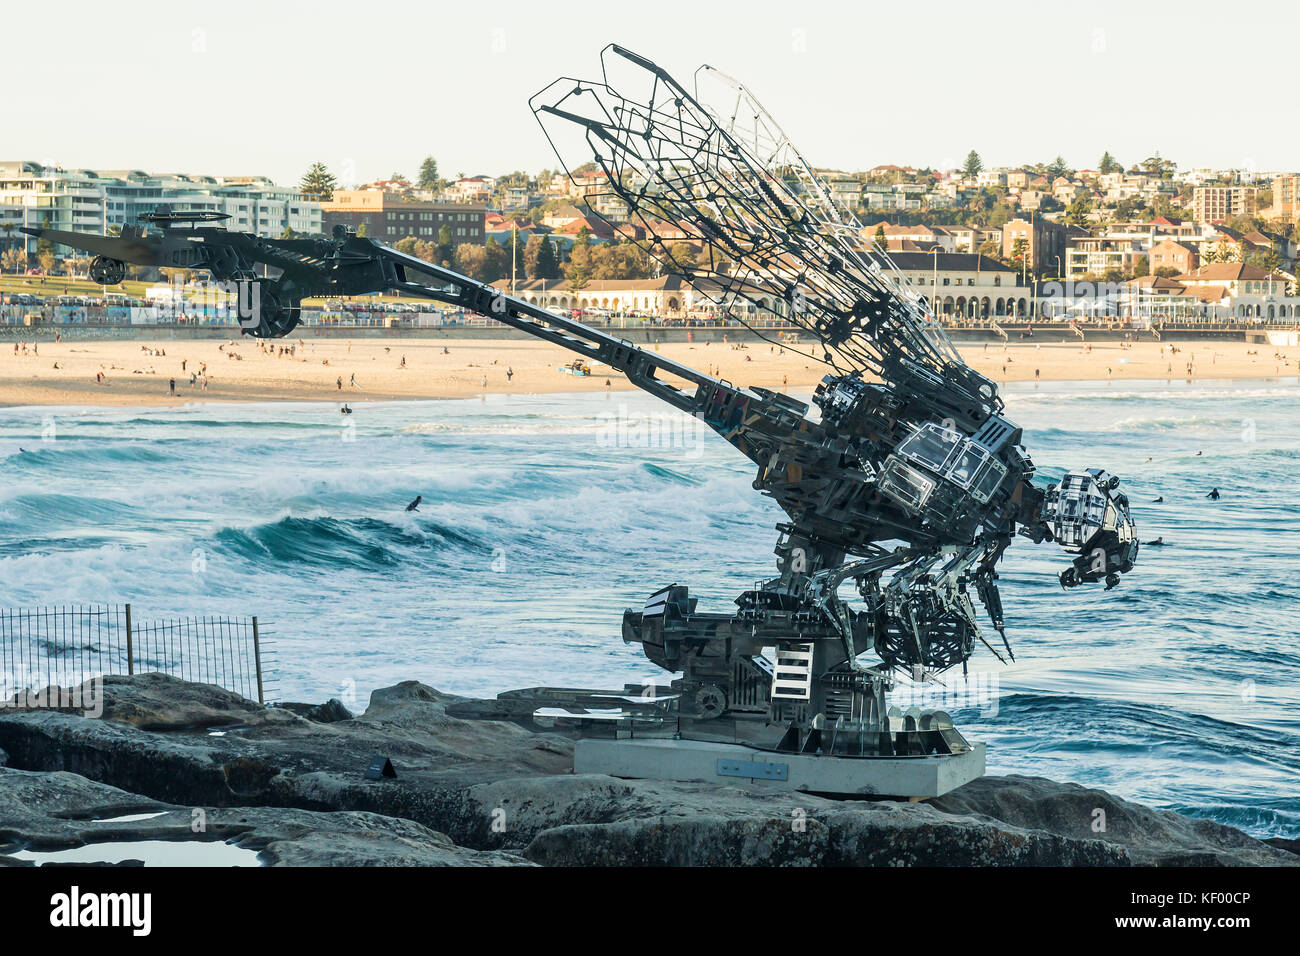 Sculpture par la mer, la plage de Bondi à plage de Tamarama, Sydney, Australie. Morceau de sculpture par Xia Hang-Rangerer. Banque D'Images